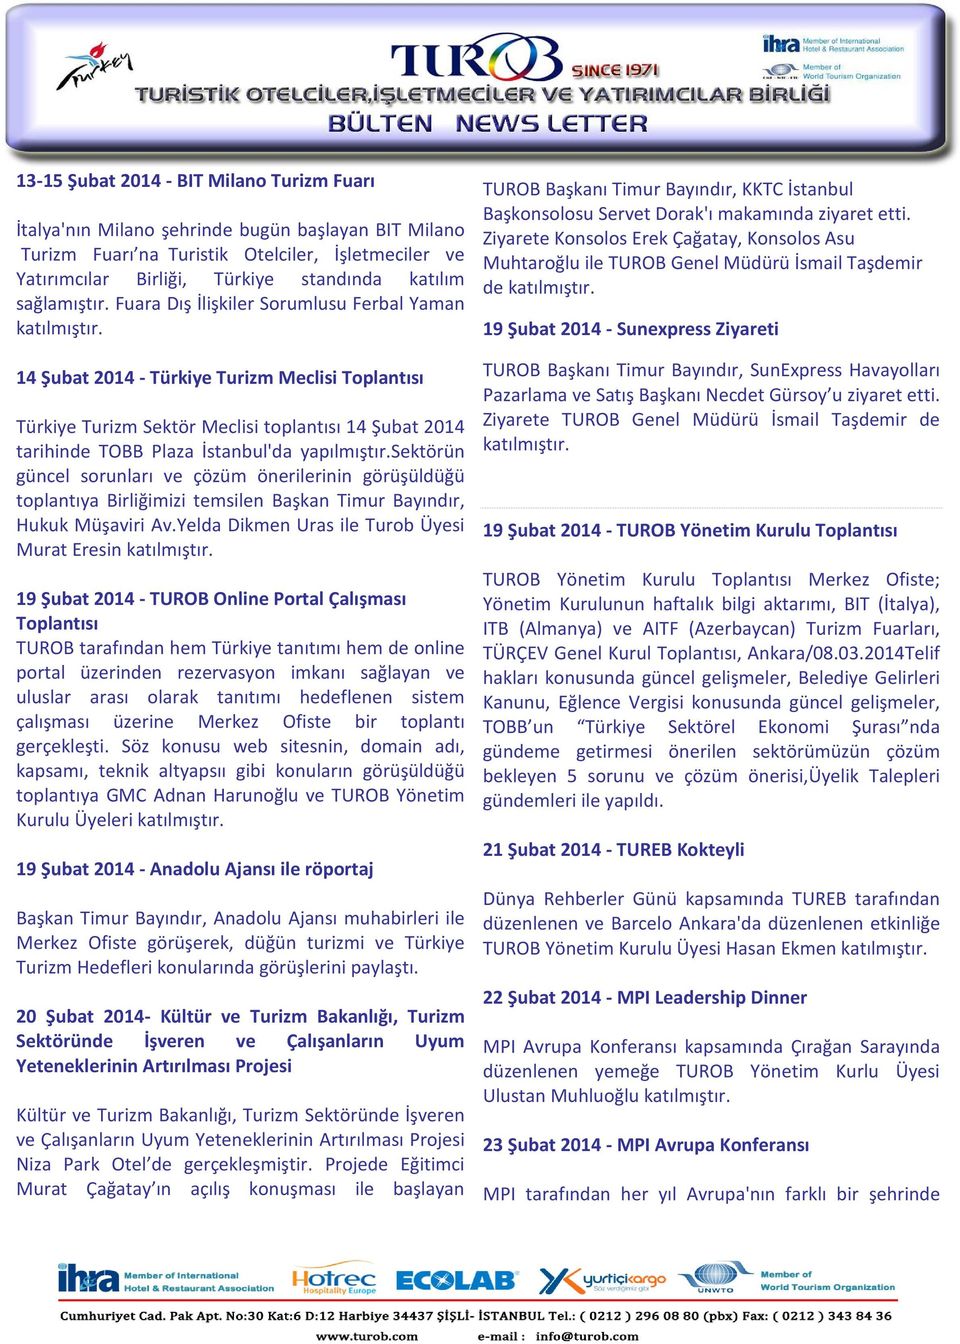 Fuara Dış İlişkiler Sorumlusu Ferbal Yaman 14 Şubat 2014 - Türkiye Turizm Meclisi Toplantısı Türkiye Turizm Sektör Meclisi toplantısı 14 Şubat 2014 tarihinde TOBB Plaza İstanbul'da yapılmıştır.